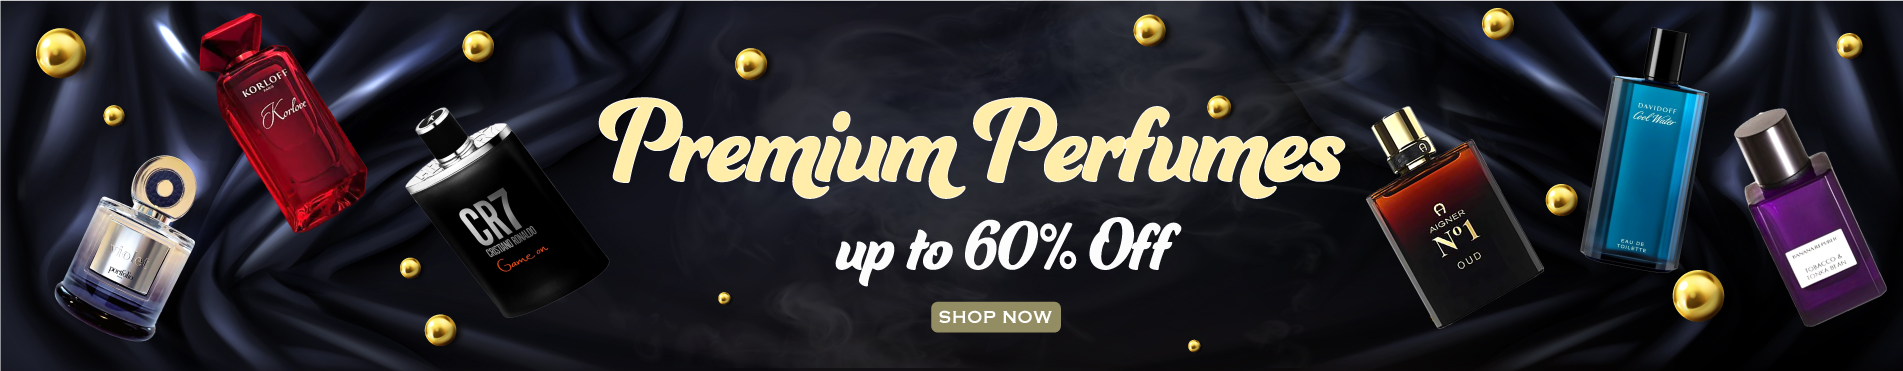 Premium perfumers 